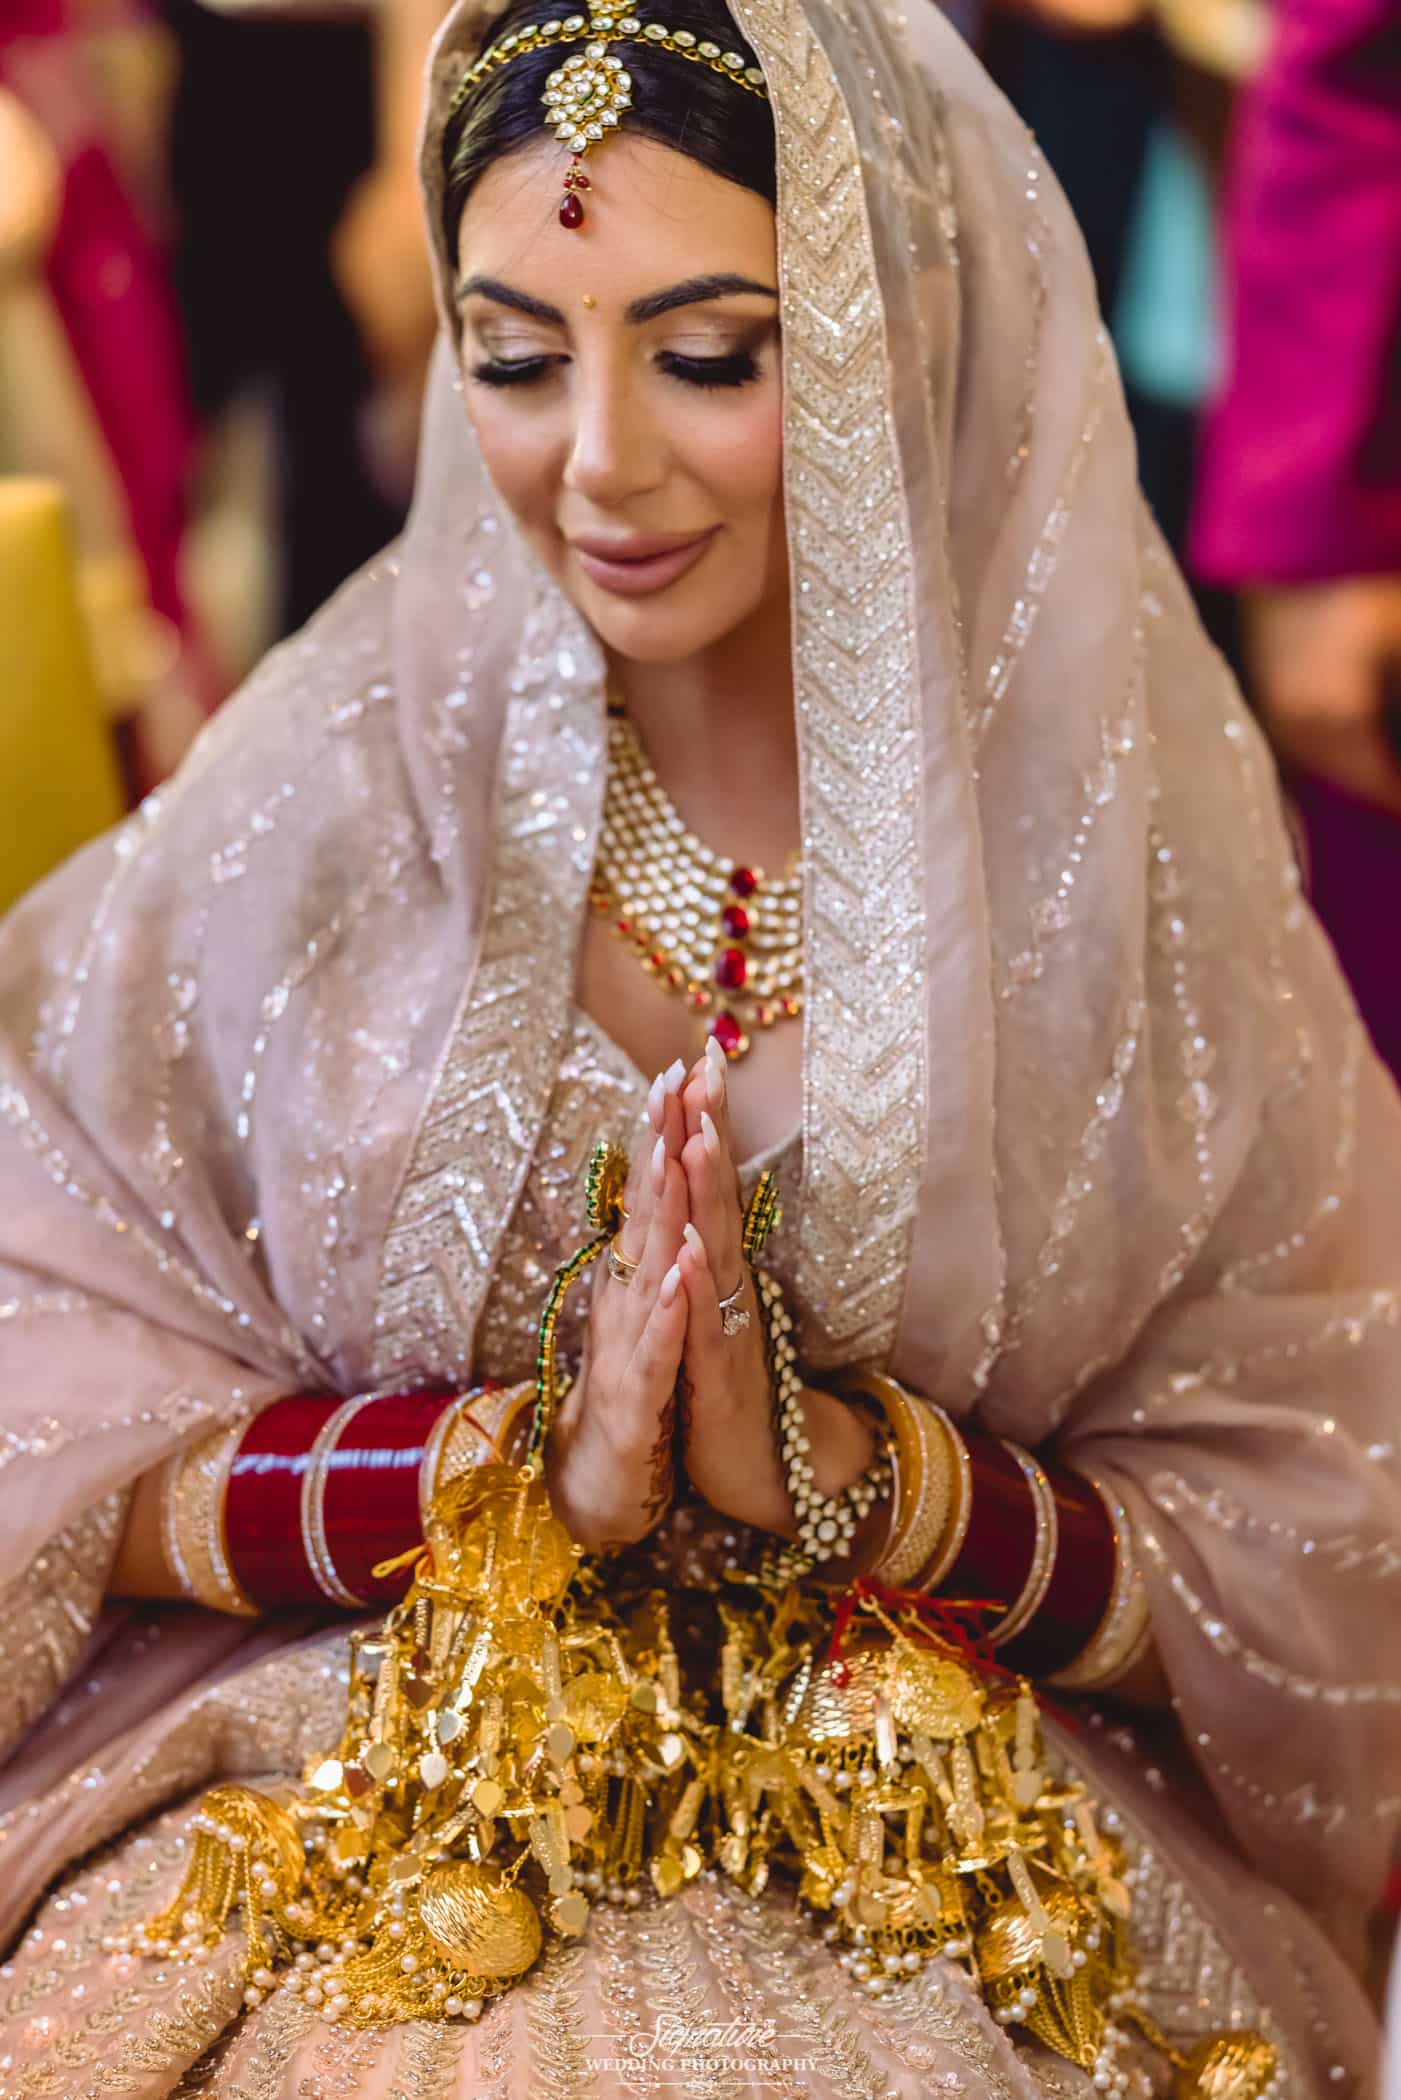 Indian bride holding hands together